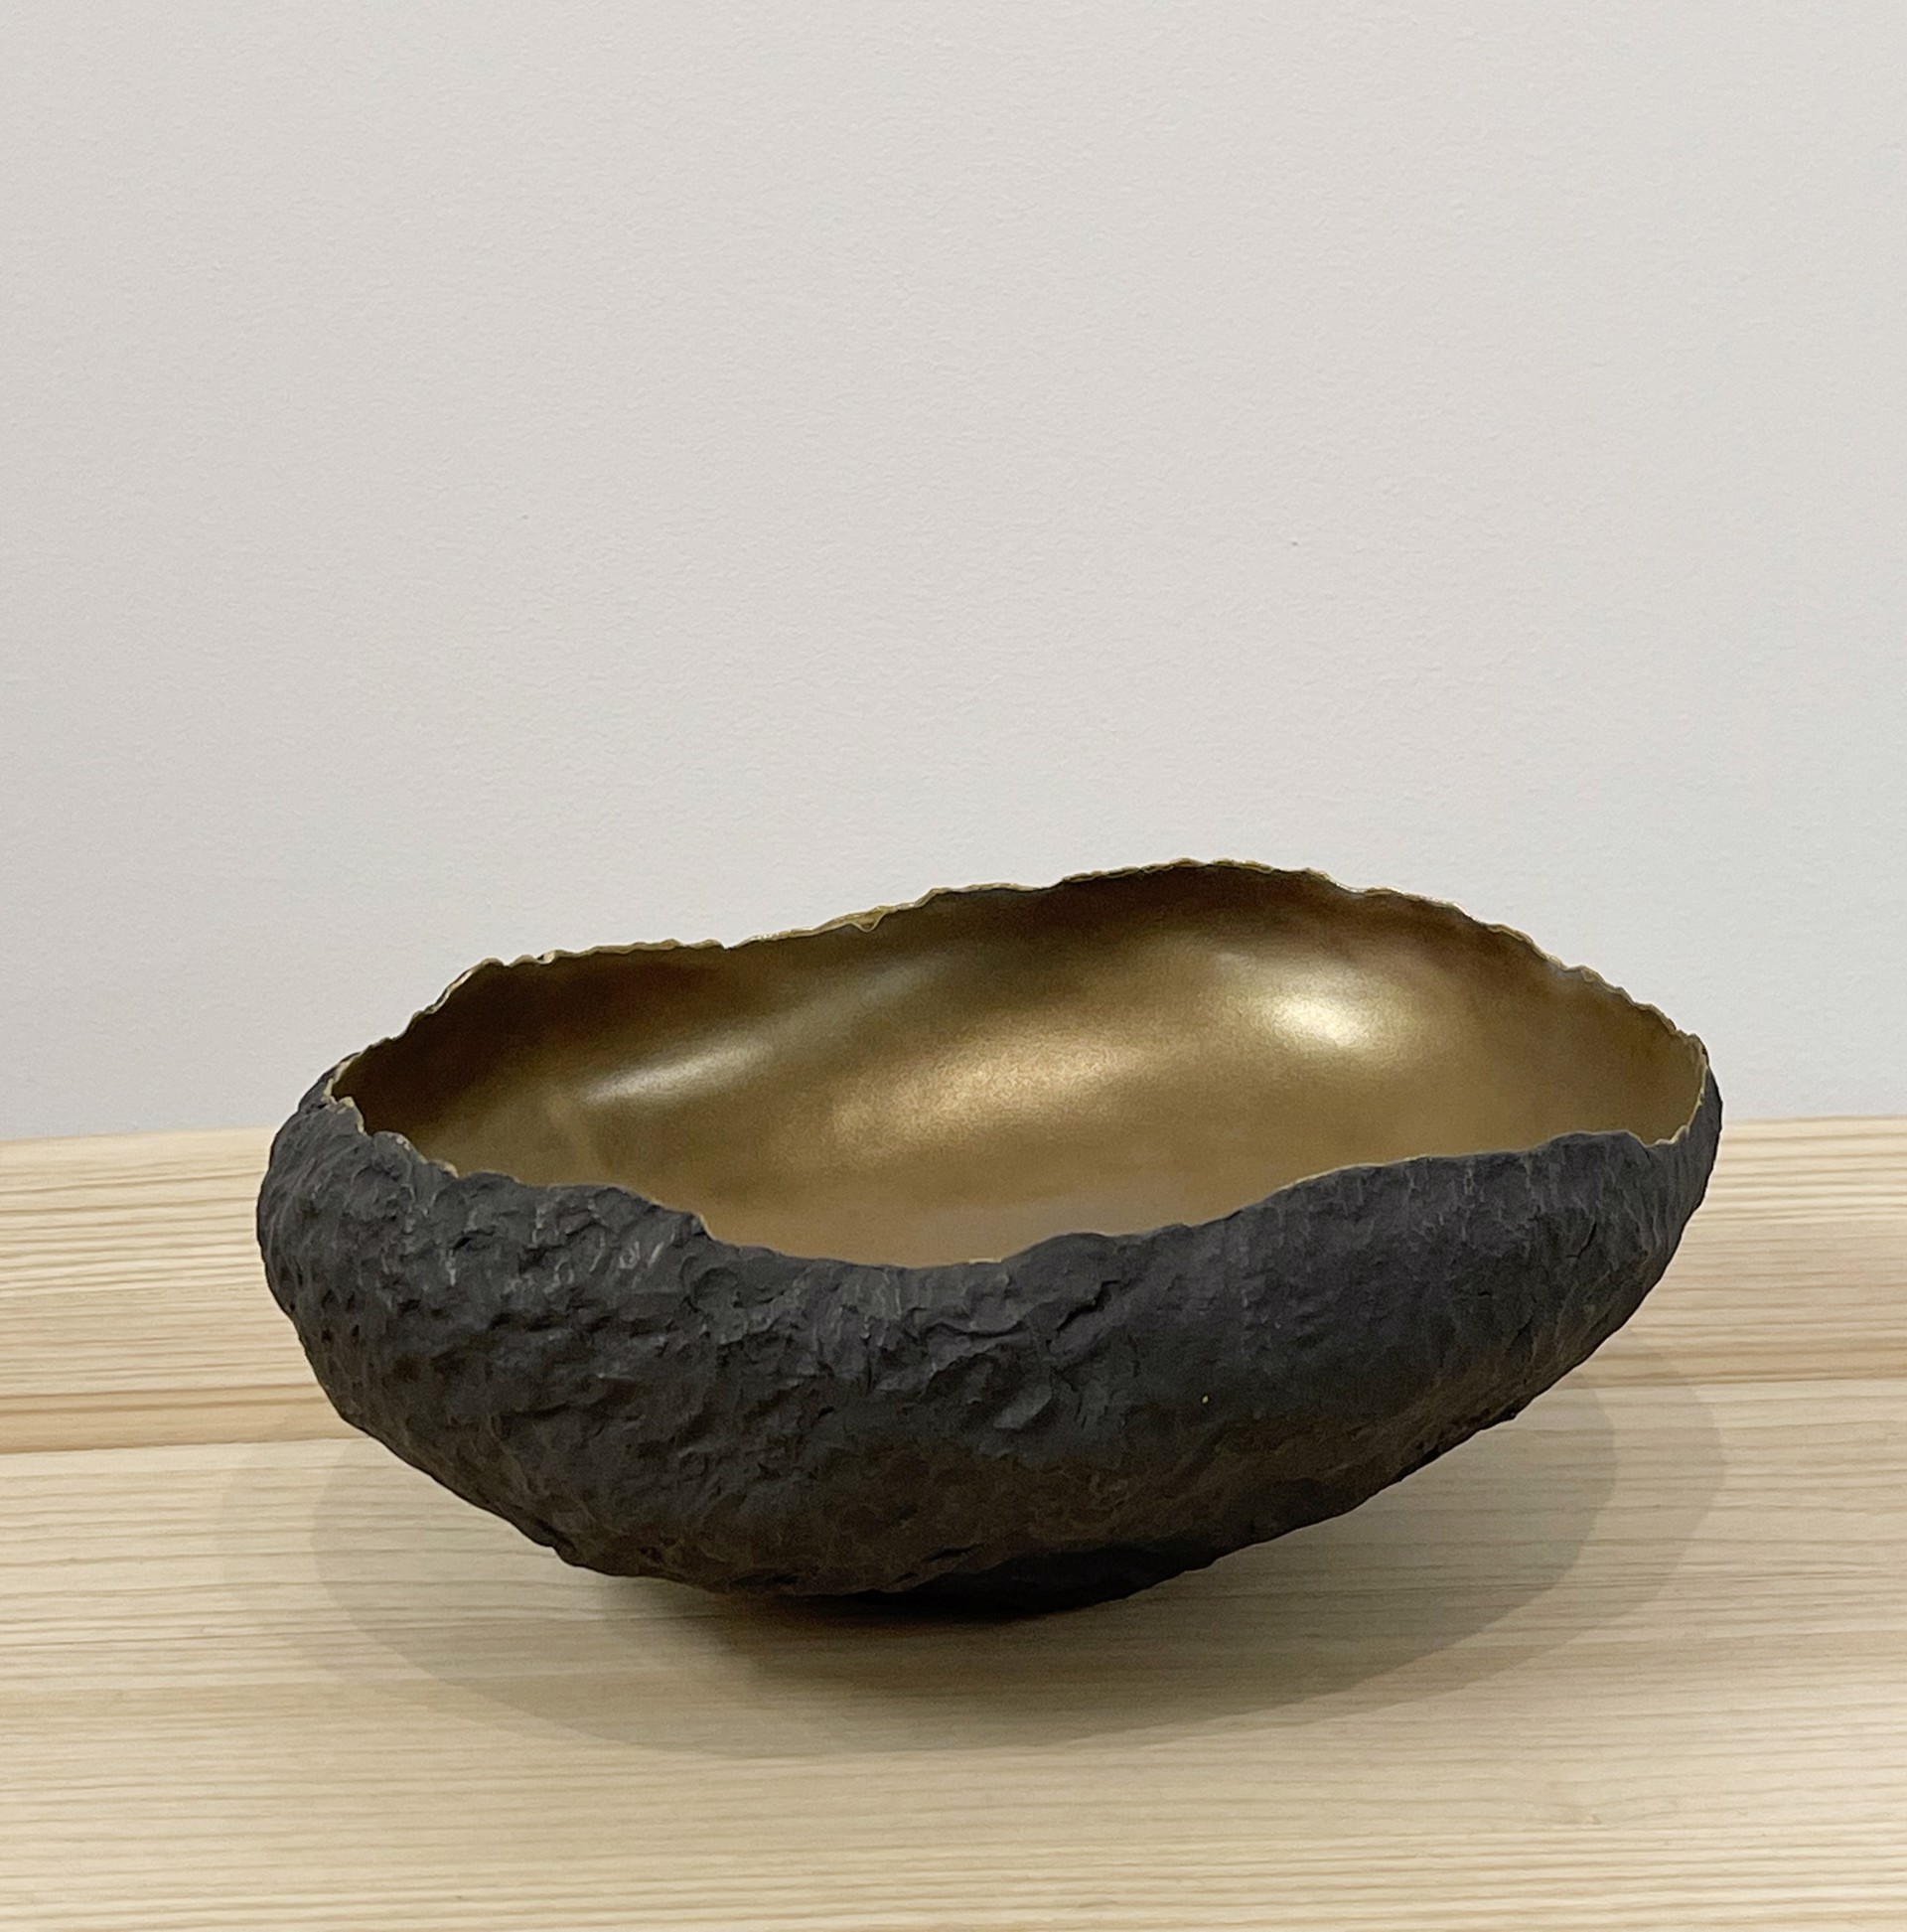 Ceramic with bronze glaze by Cristina Salusti